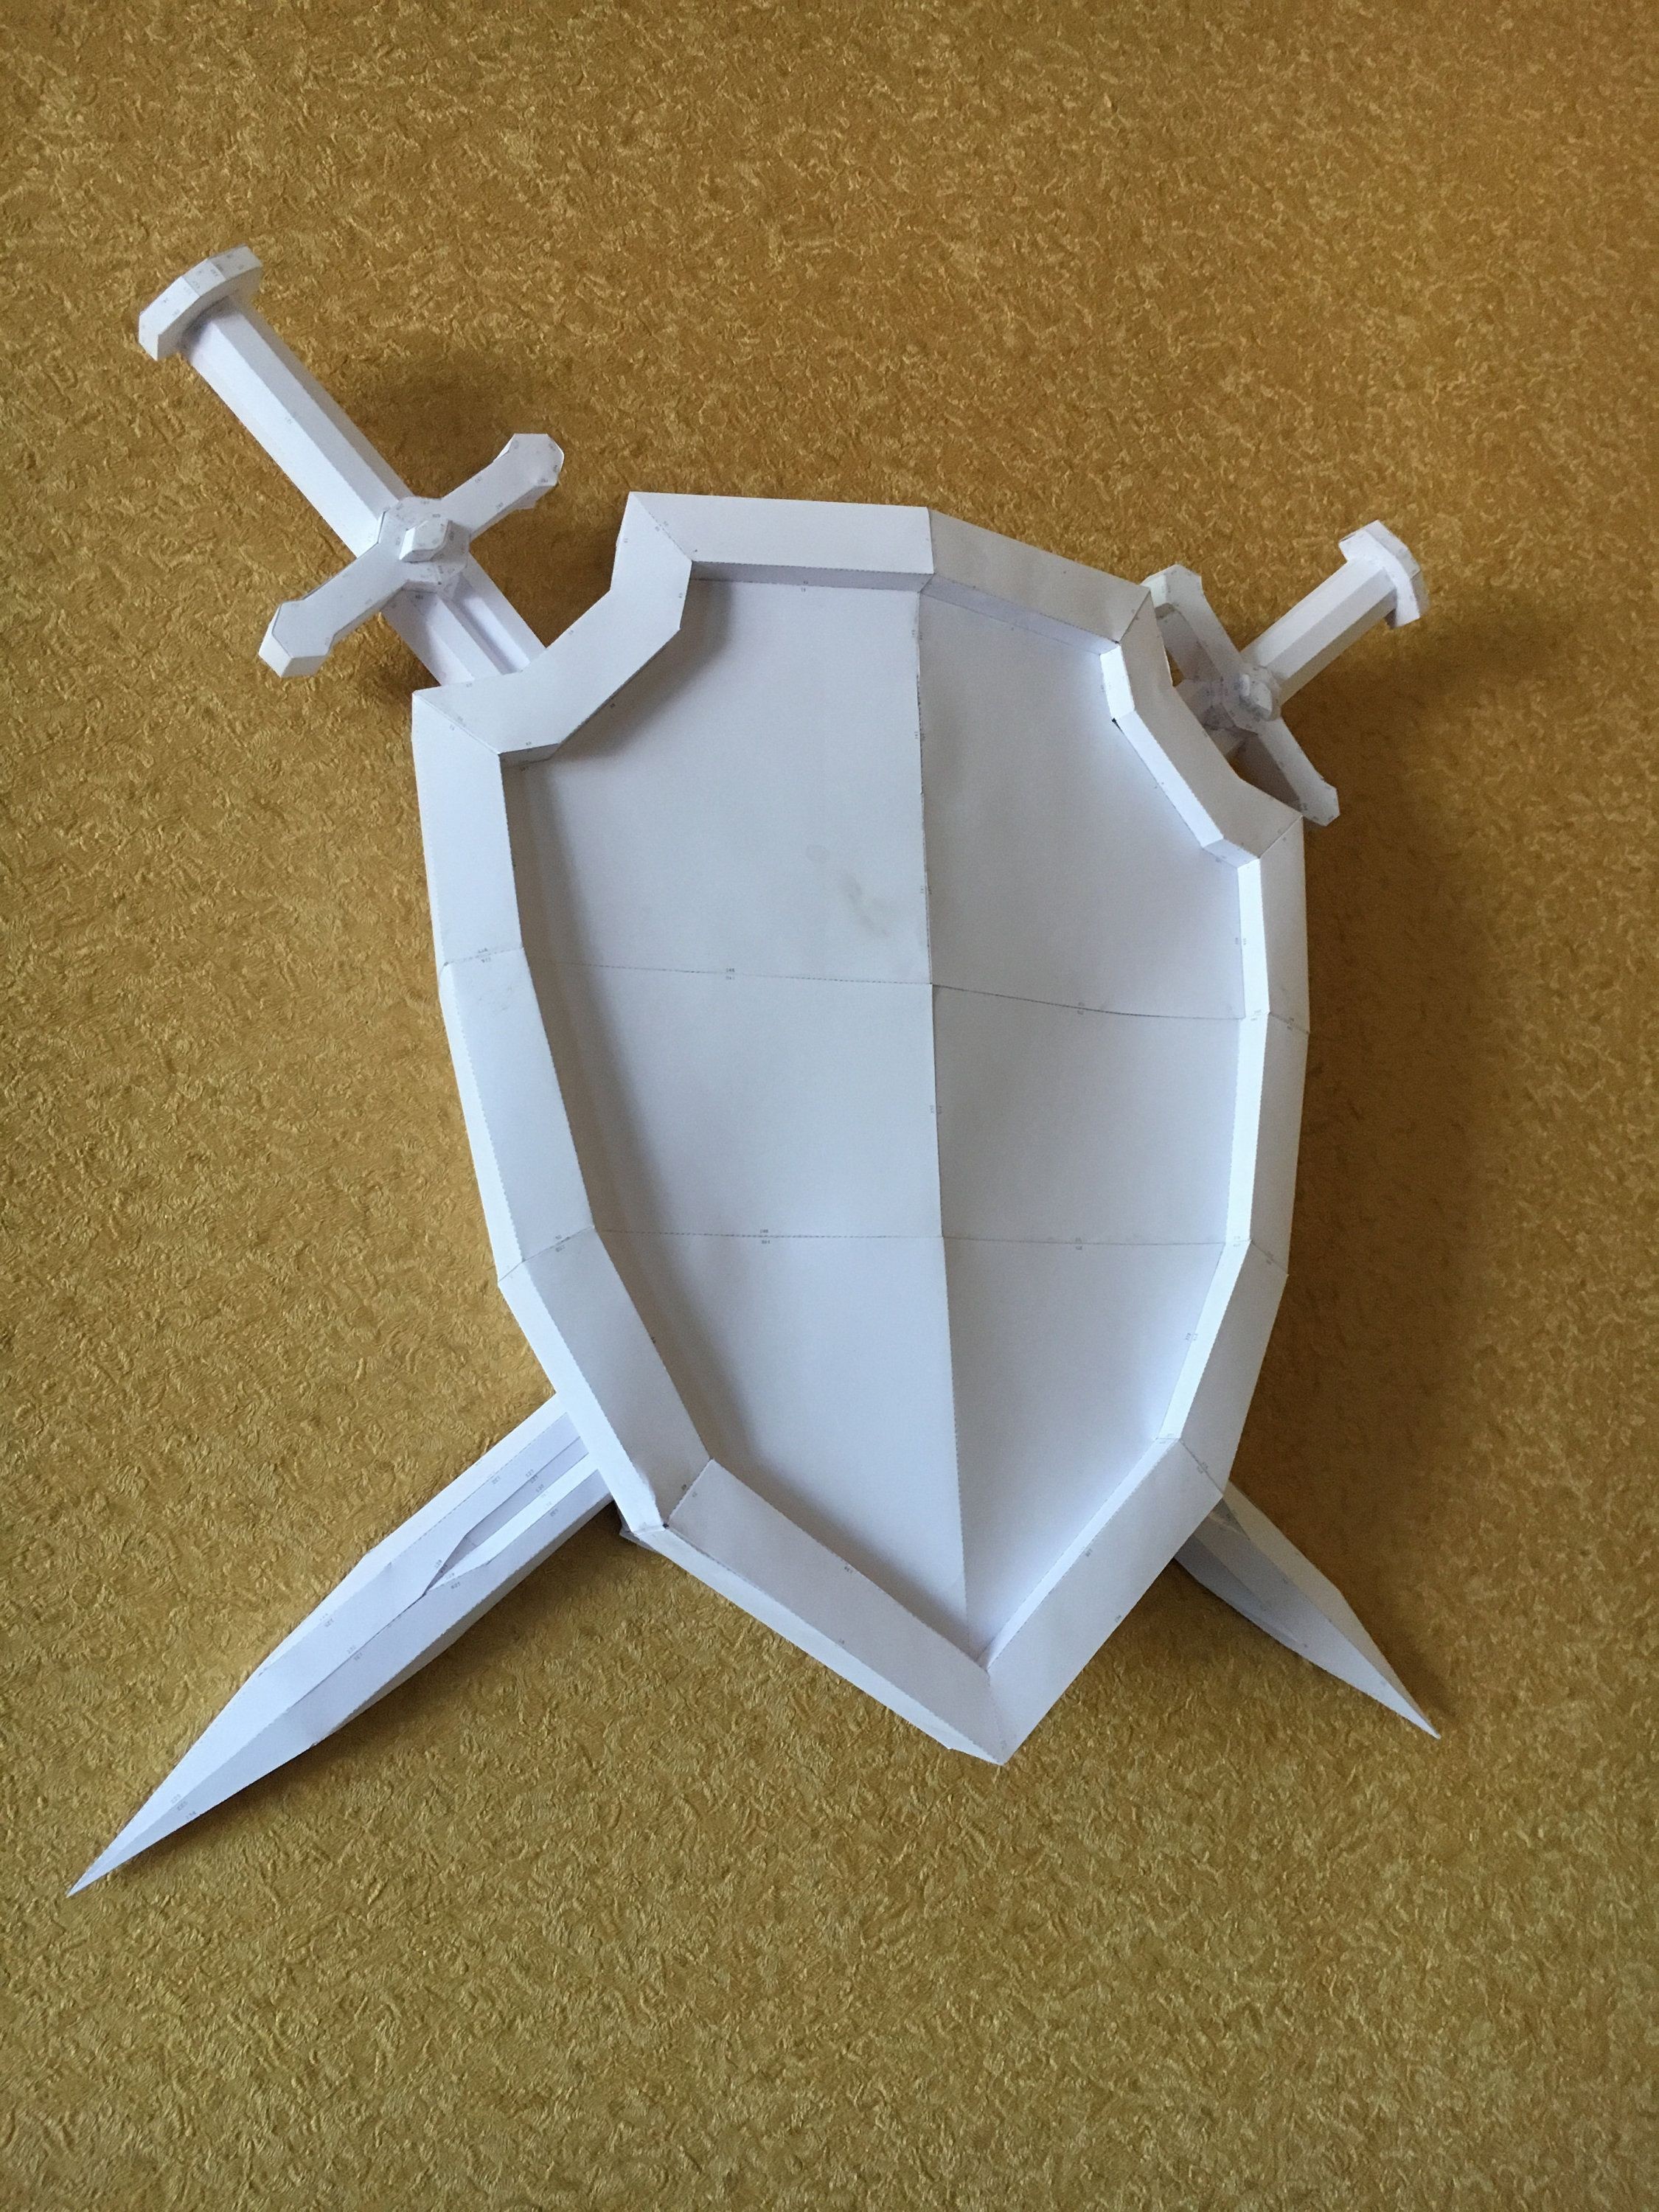 Papercraft Human Sword Shield Diy Papercraft Model ÐÑÐ¼Ð°Ð¶Ð½ÑÐµ Ð¸Ð·Ð´ÐµÐ Ð¸Ñ